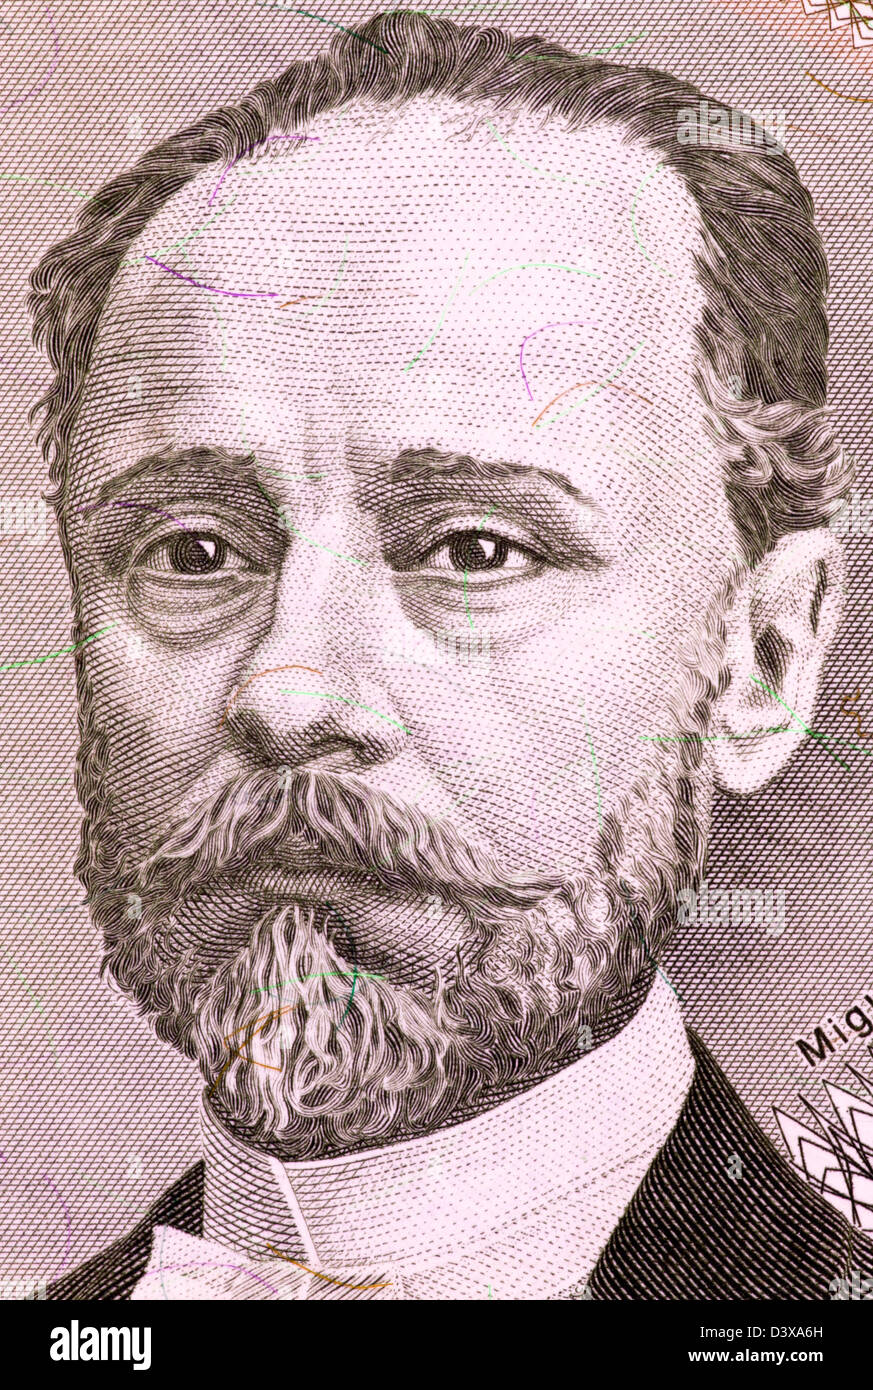 Miguel Angel Juarez Celman (1844-1909) su 5000 Australes 1990 banconota da Argentina. Presidente dell'Argentina durante il 1886-1890. Foto Stock